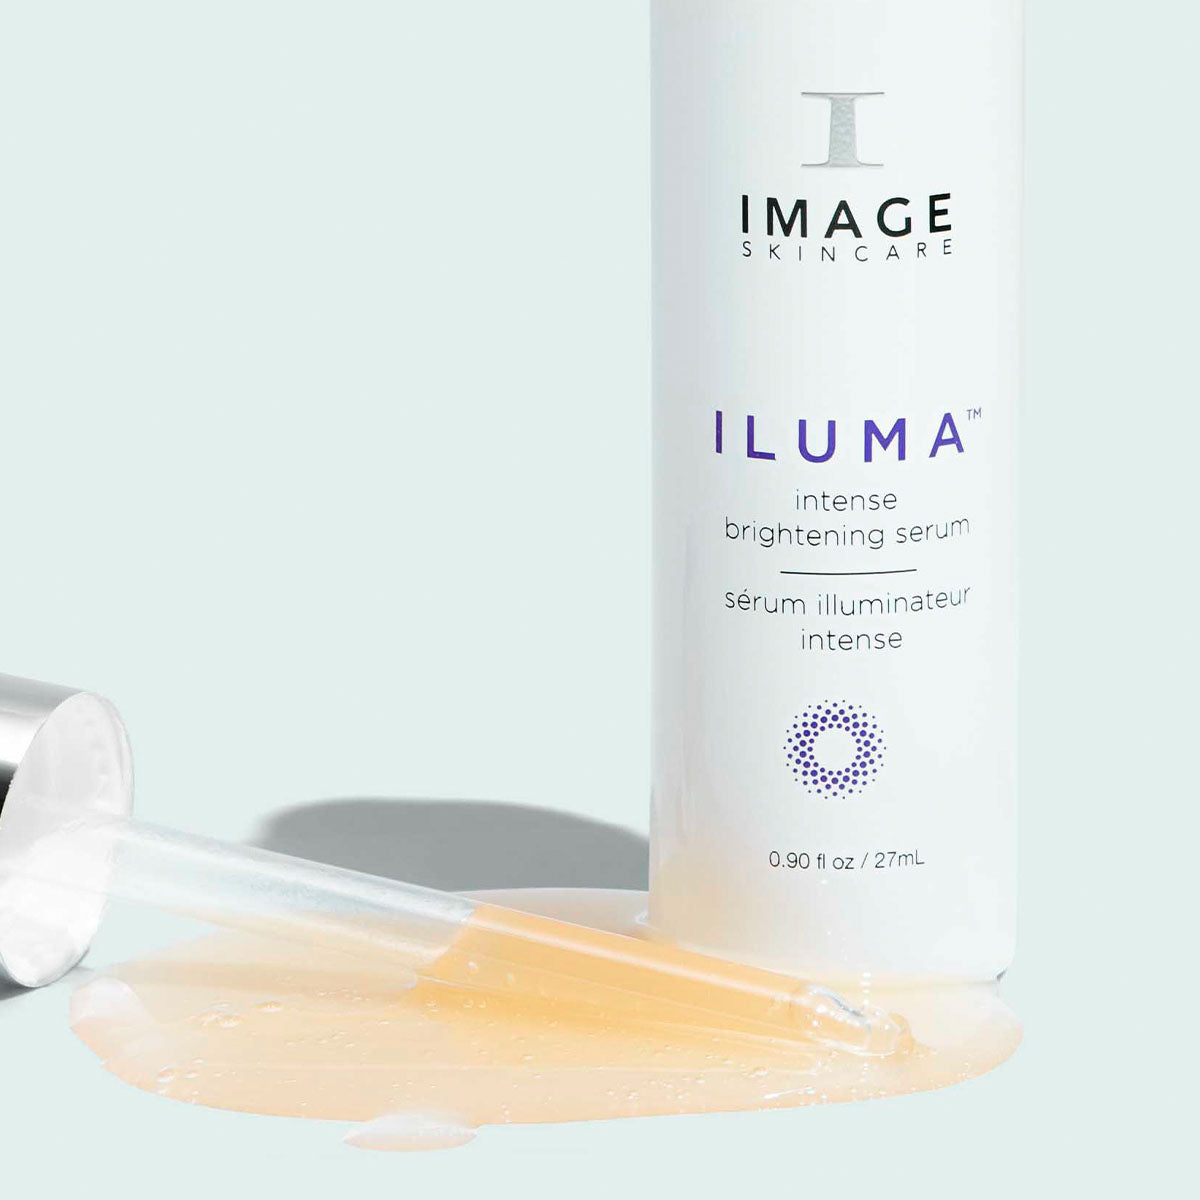 ILUMA® intense brightening serum